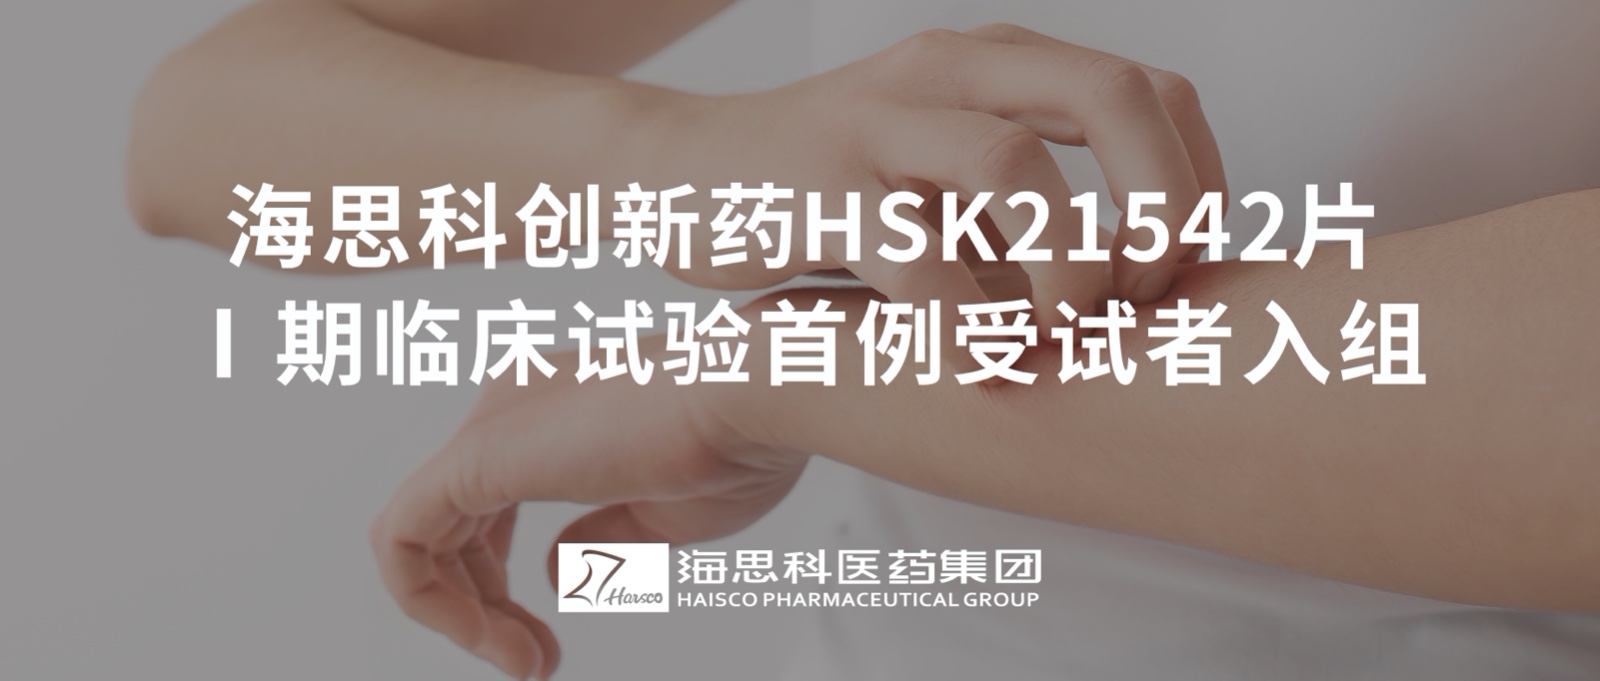 亚洲bet356官网创新药HSK21542片Ⅰ期临床试验首例受试者入组